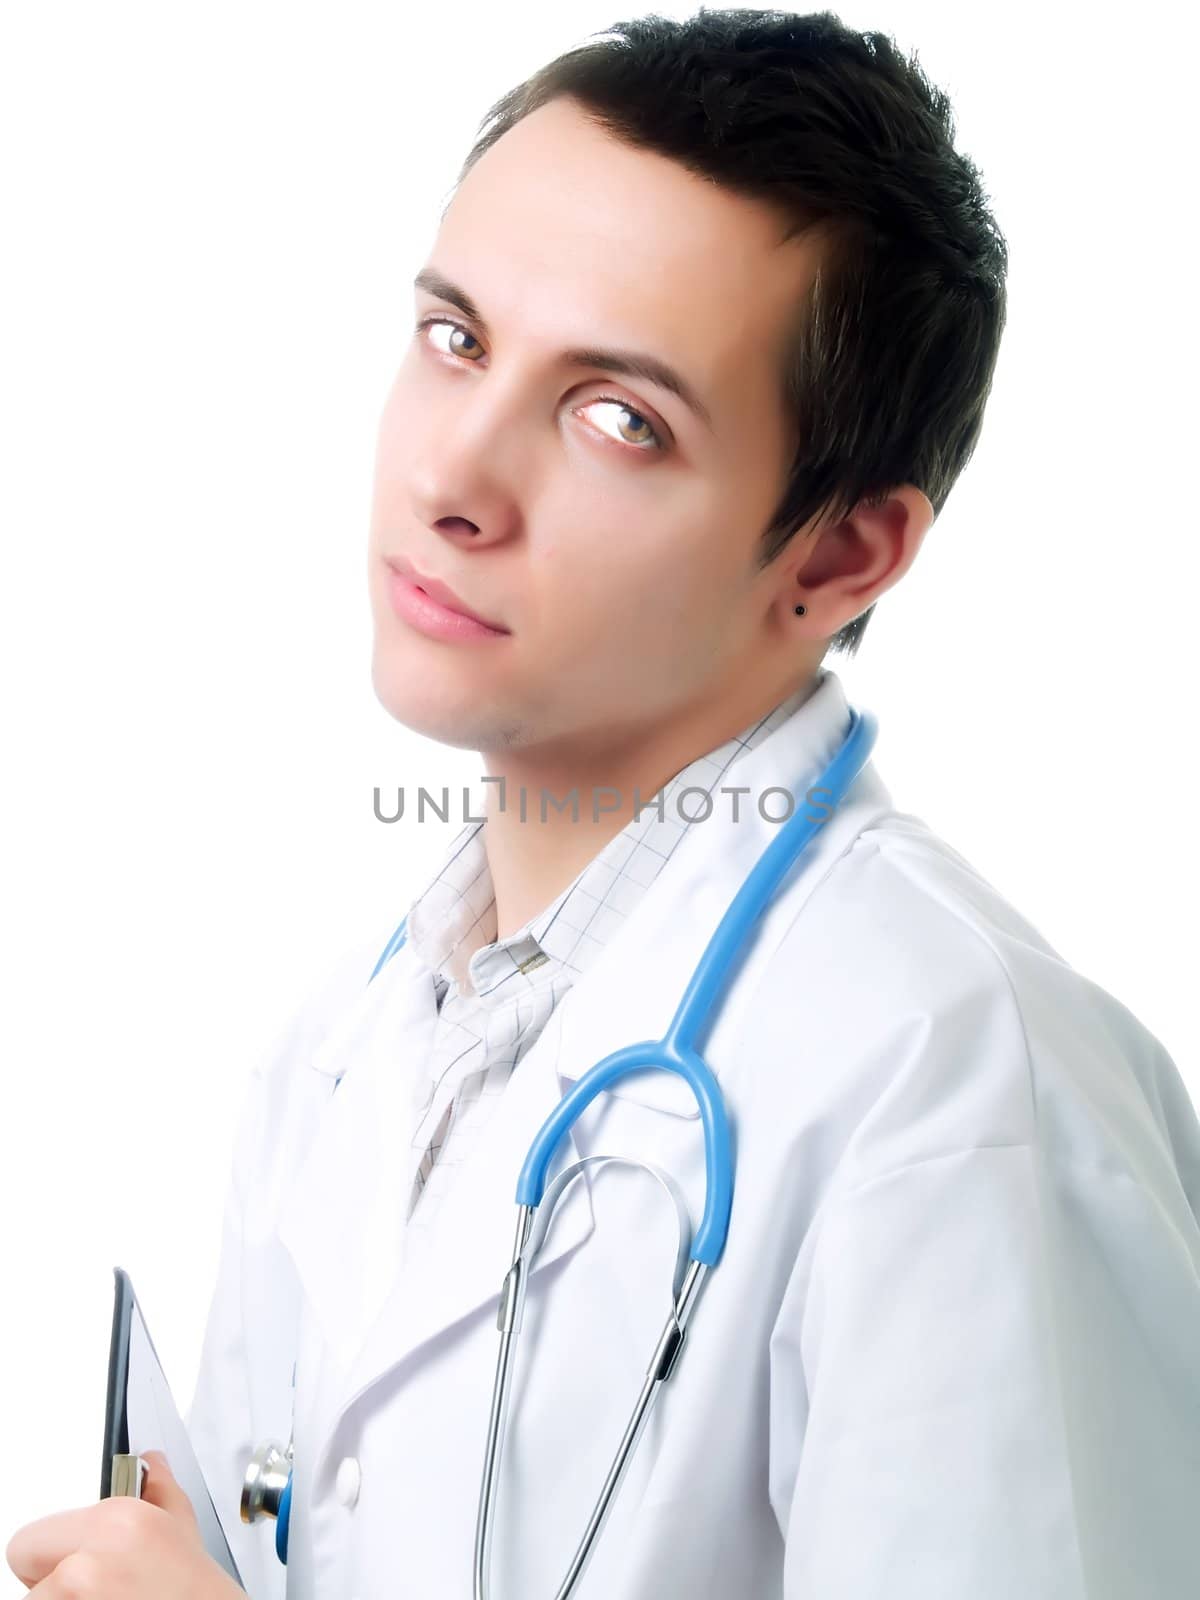 Doctor by henrischmit